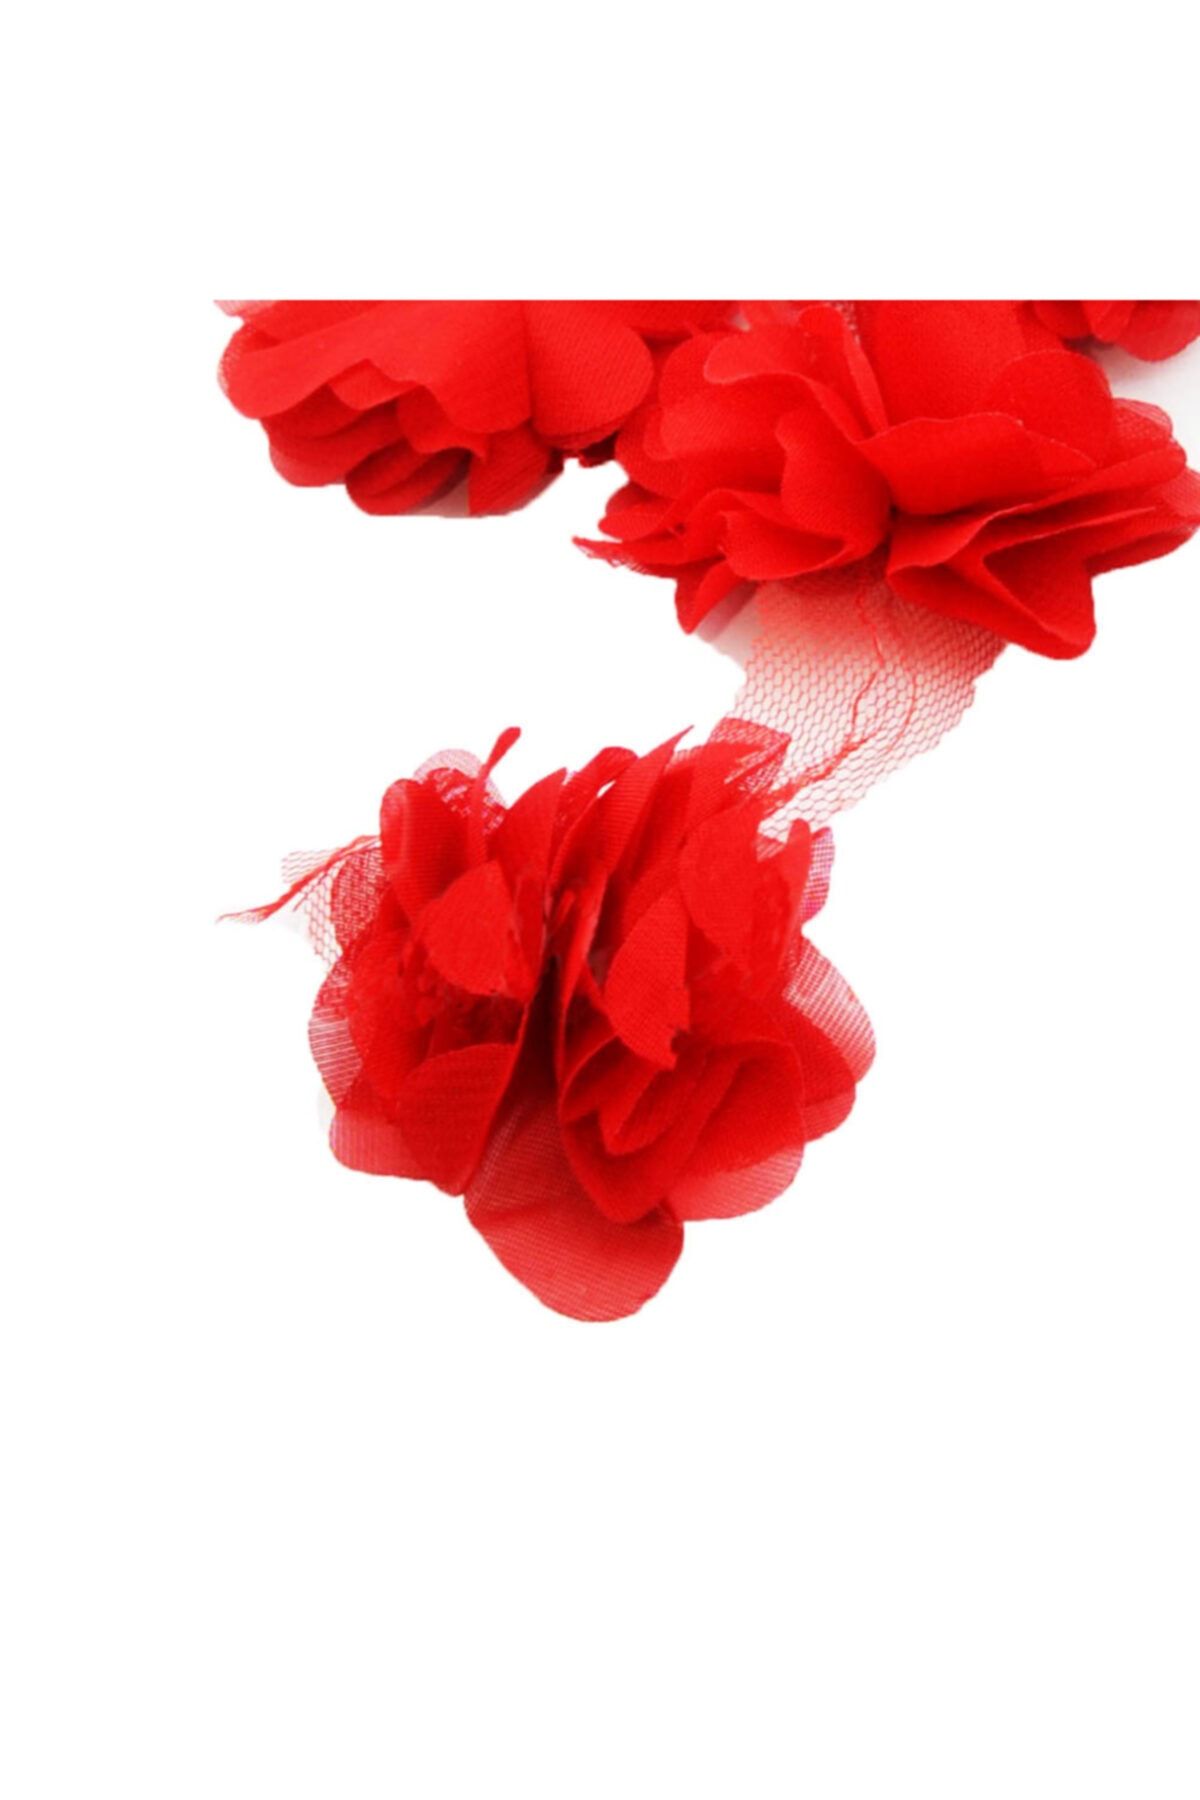 Aker Hediyelik Kırmızı 1m Gül Lazer Kesim Çiçek 12-13 Adet Organze Tül Kenar Süsü Tekstil Tasarım Kumaşı Yapay Süs